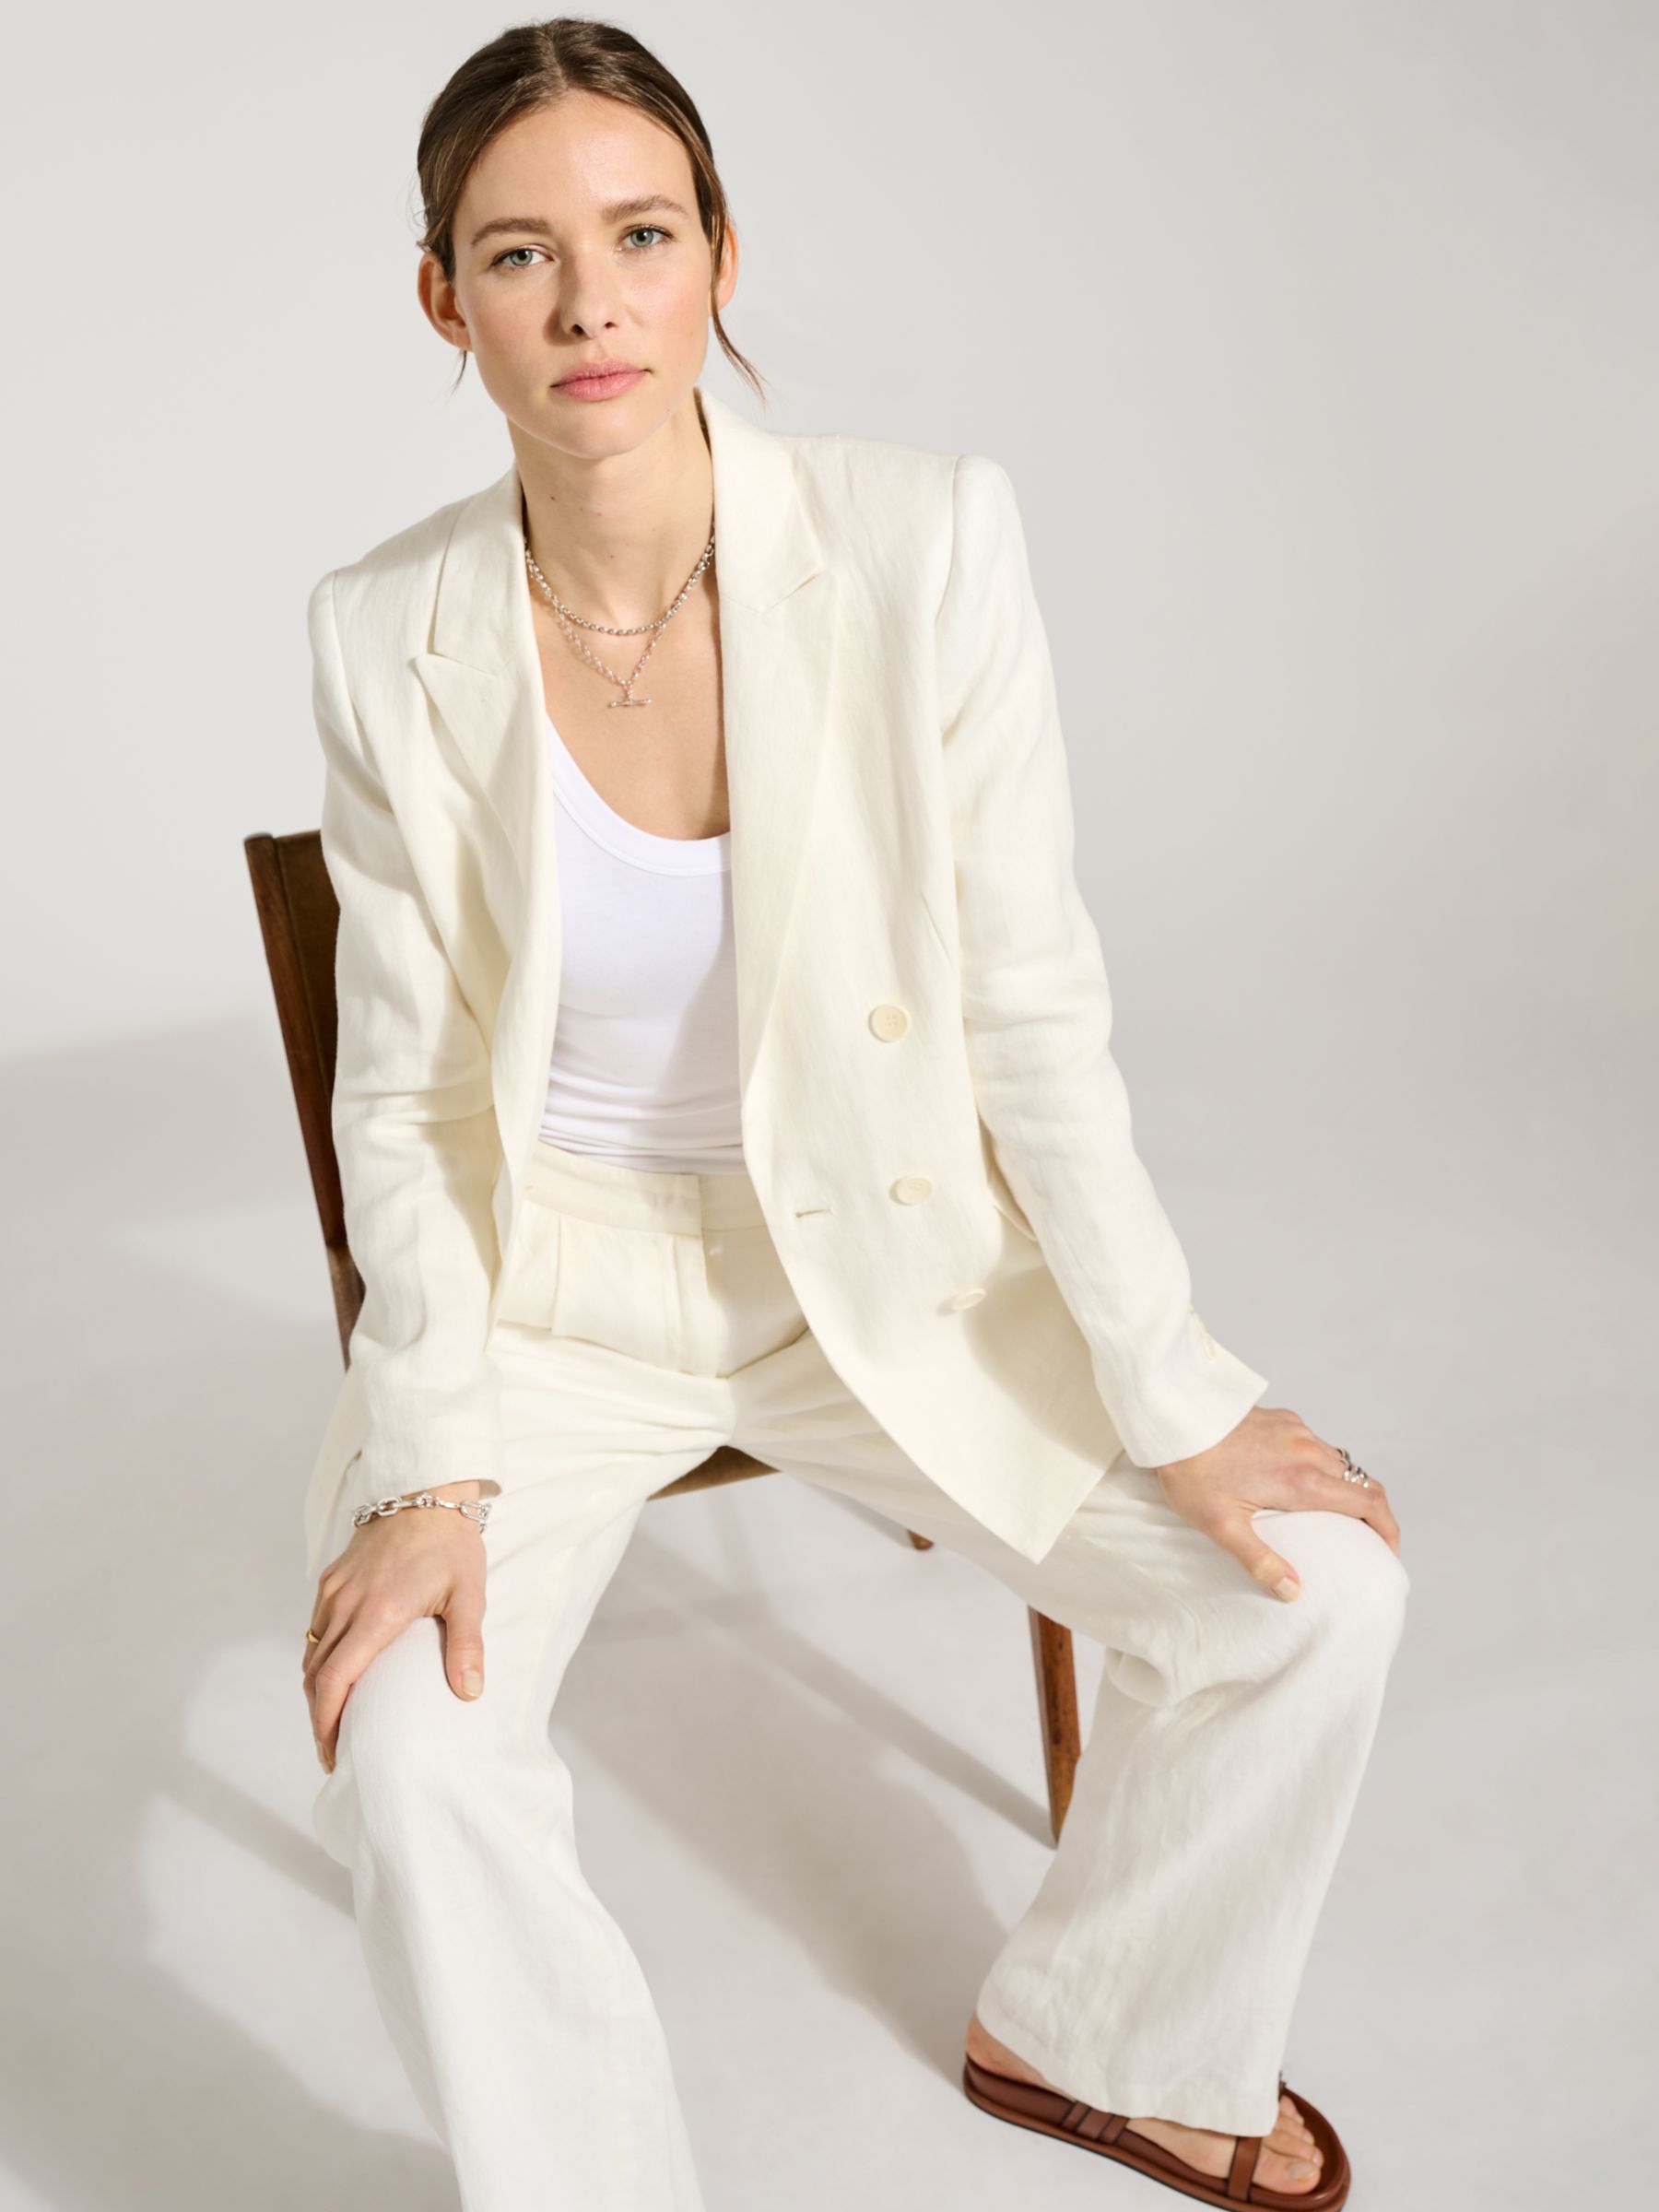 Buy Baukjen Whitley Plain Double Breasted Linen Blazer, Pure White Online at johnlewis.com